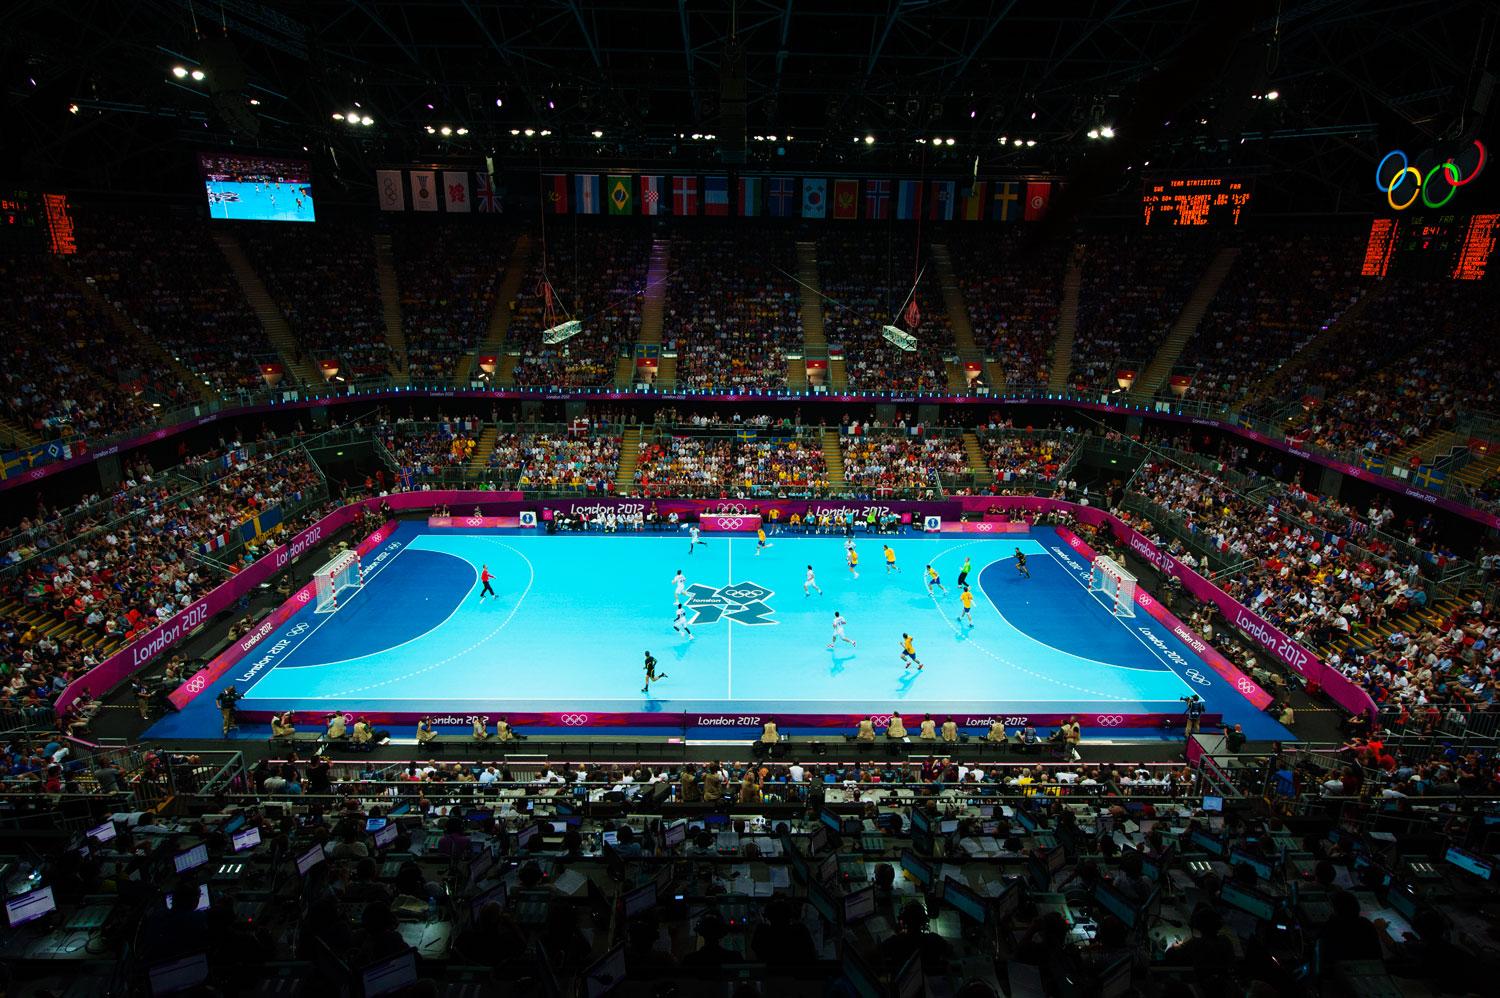 Det blir många lagsporter med svenskt deltagande att kolla på i OS.